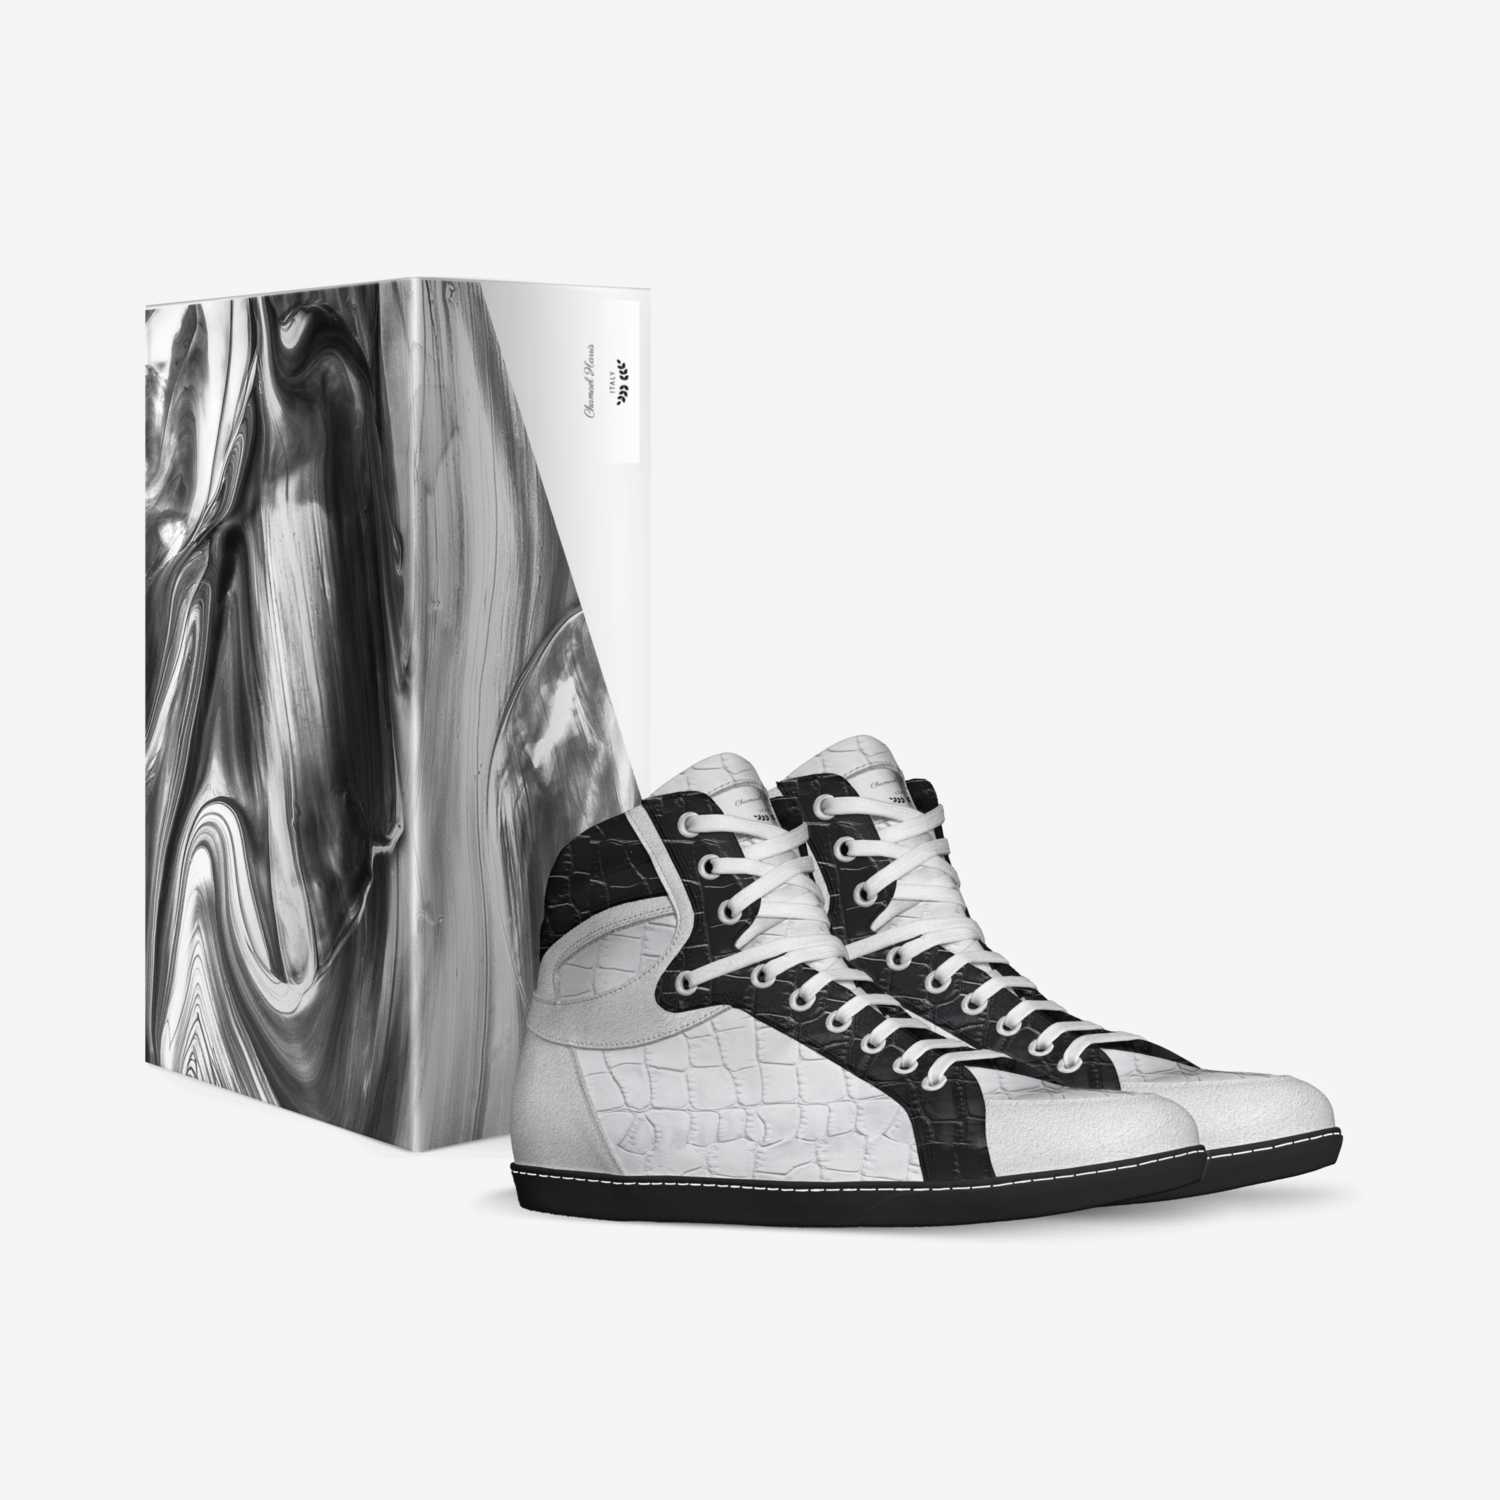 Chamael Harris custom made in Italy shoes by Tony V.harris | Box view